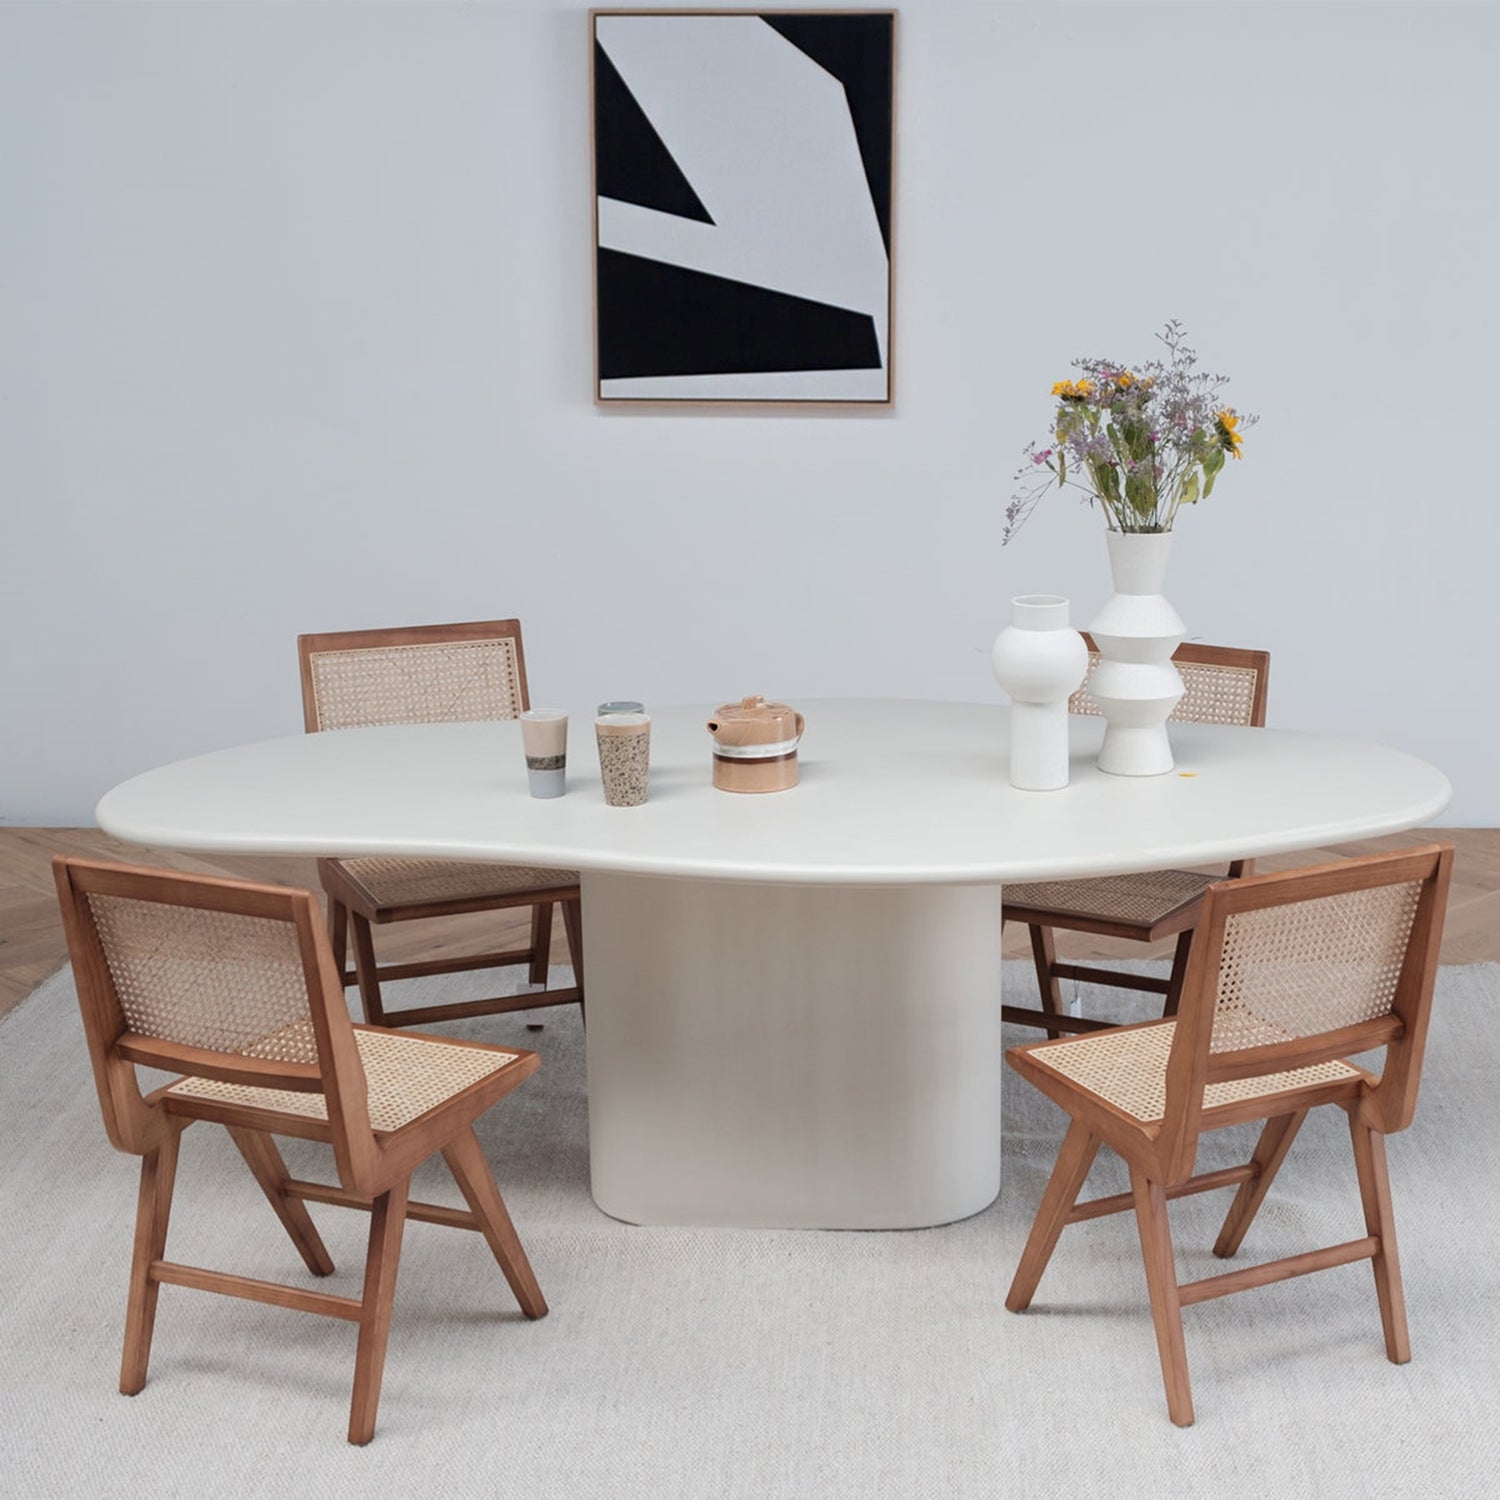 Organische eettafel met stoelen van Furnified in een eetkamer.ALT